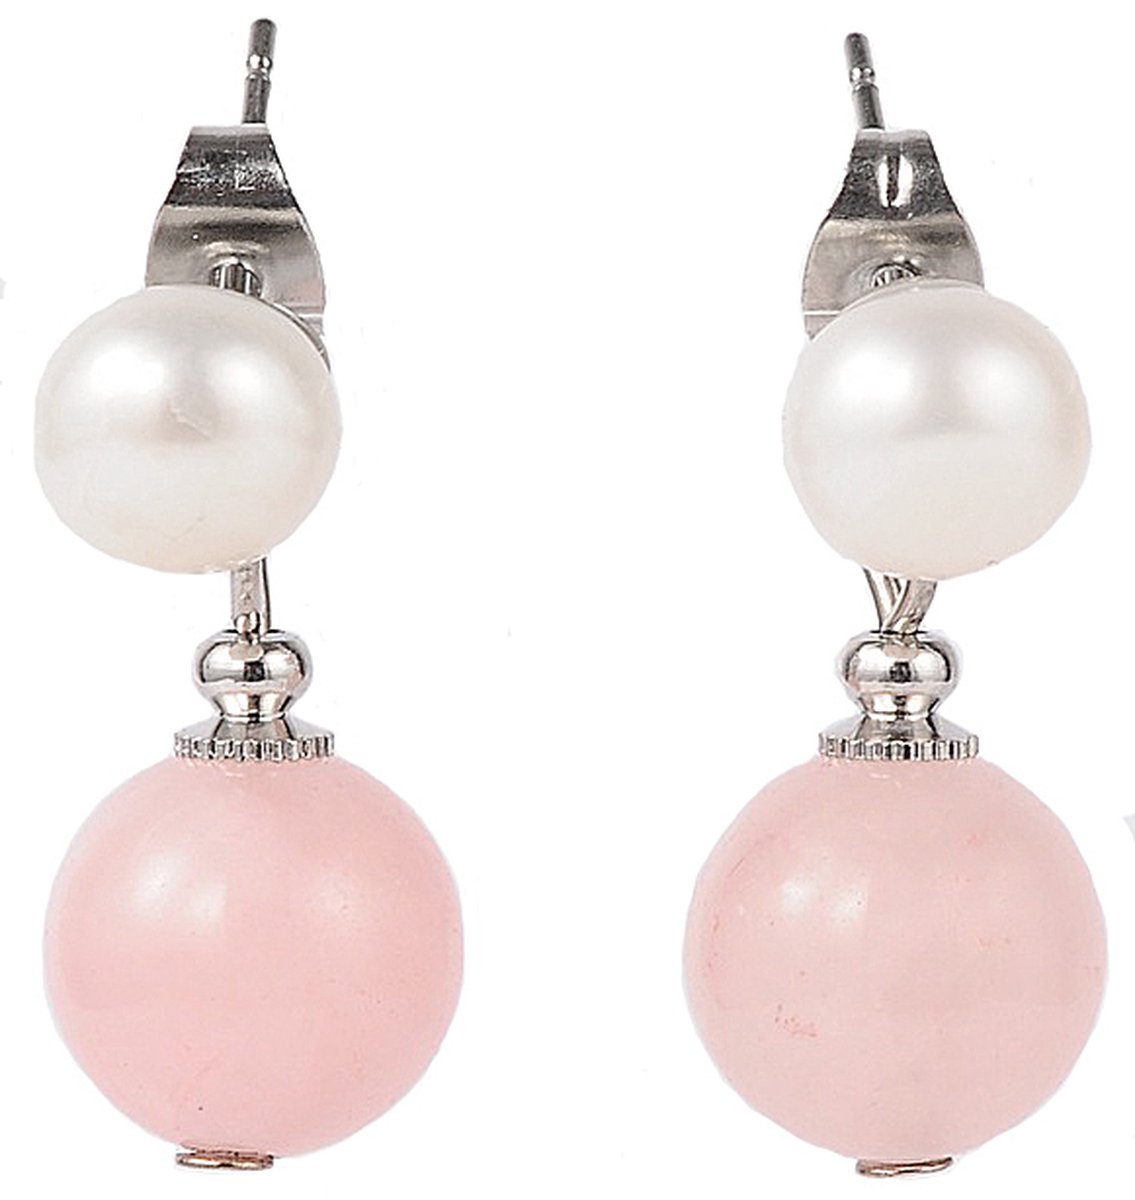 Zoetwaterparel met edelstenen oorbellen Pearl Stud Rose Quartz - oorstekers - echte parels - rozenkwarts - wit - roze